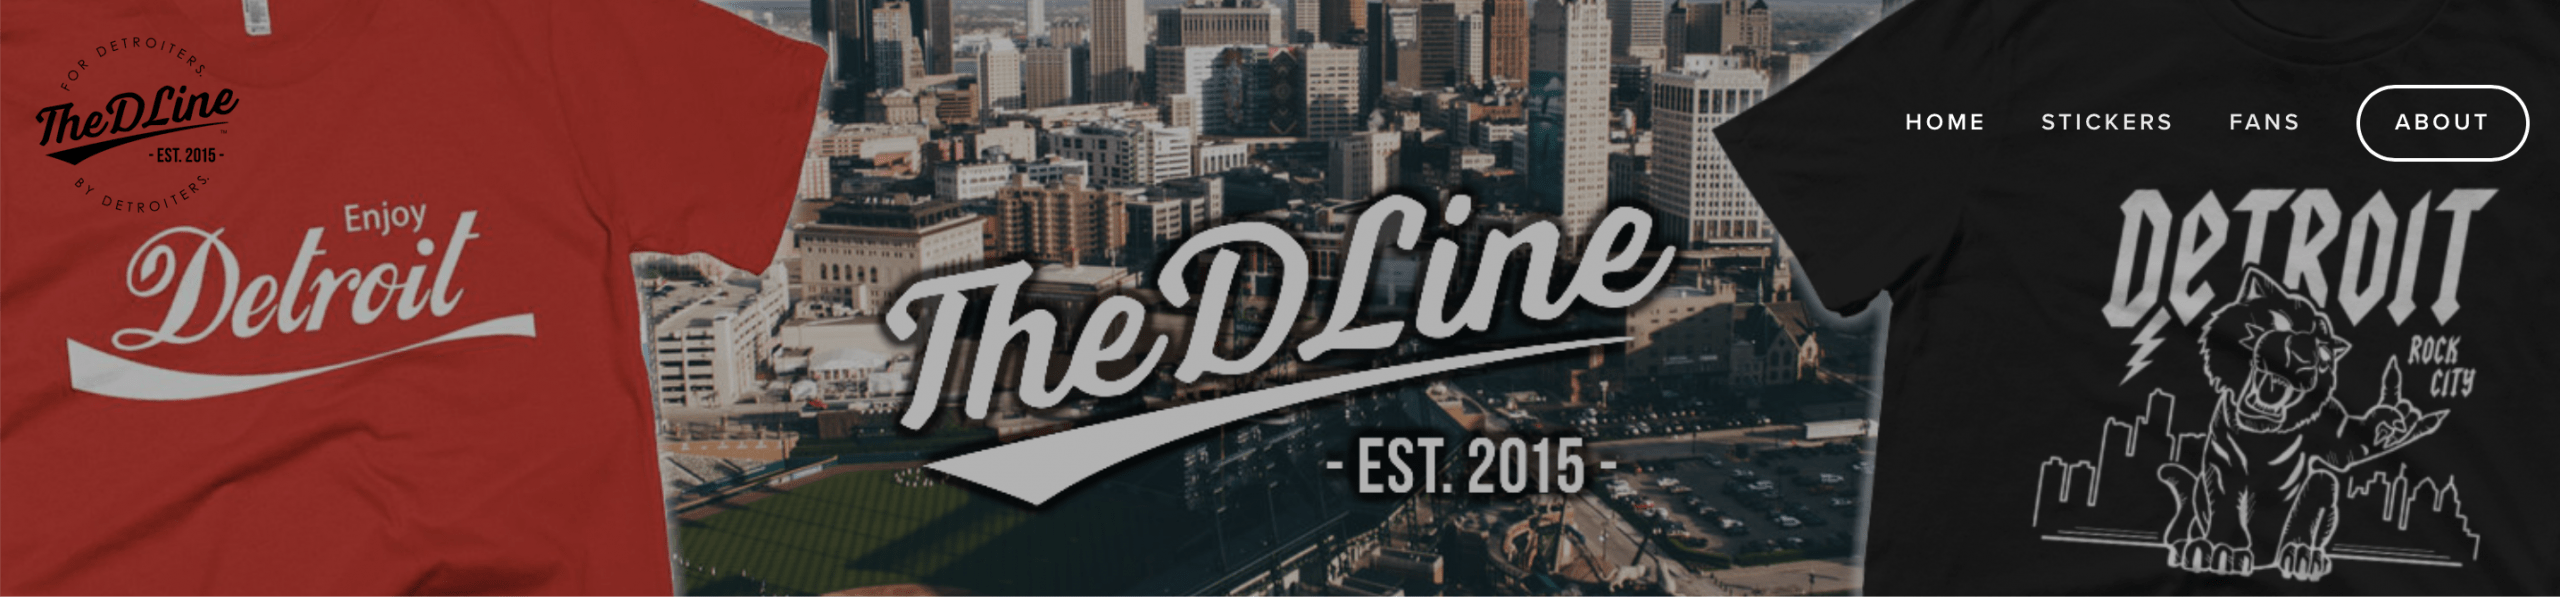 The D Line, Detroit Lions, Michigan